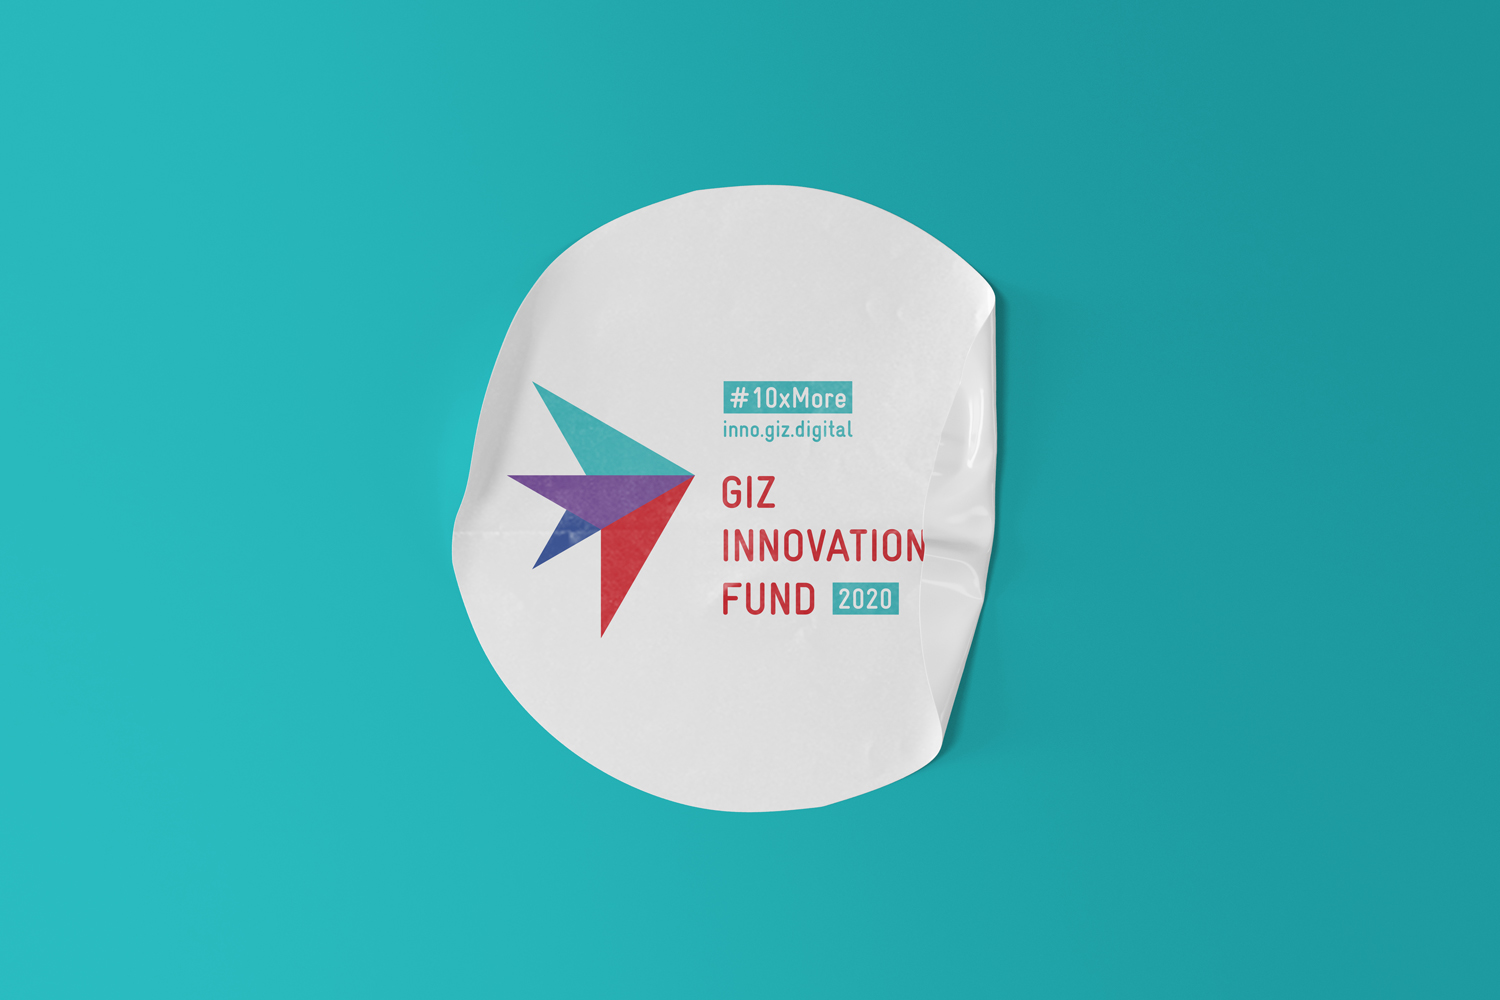 GIZ Innovation Fund